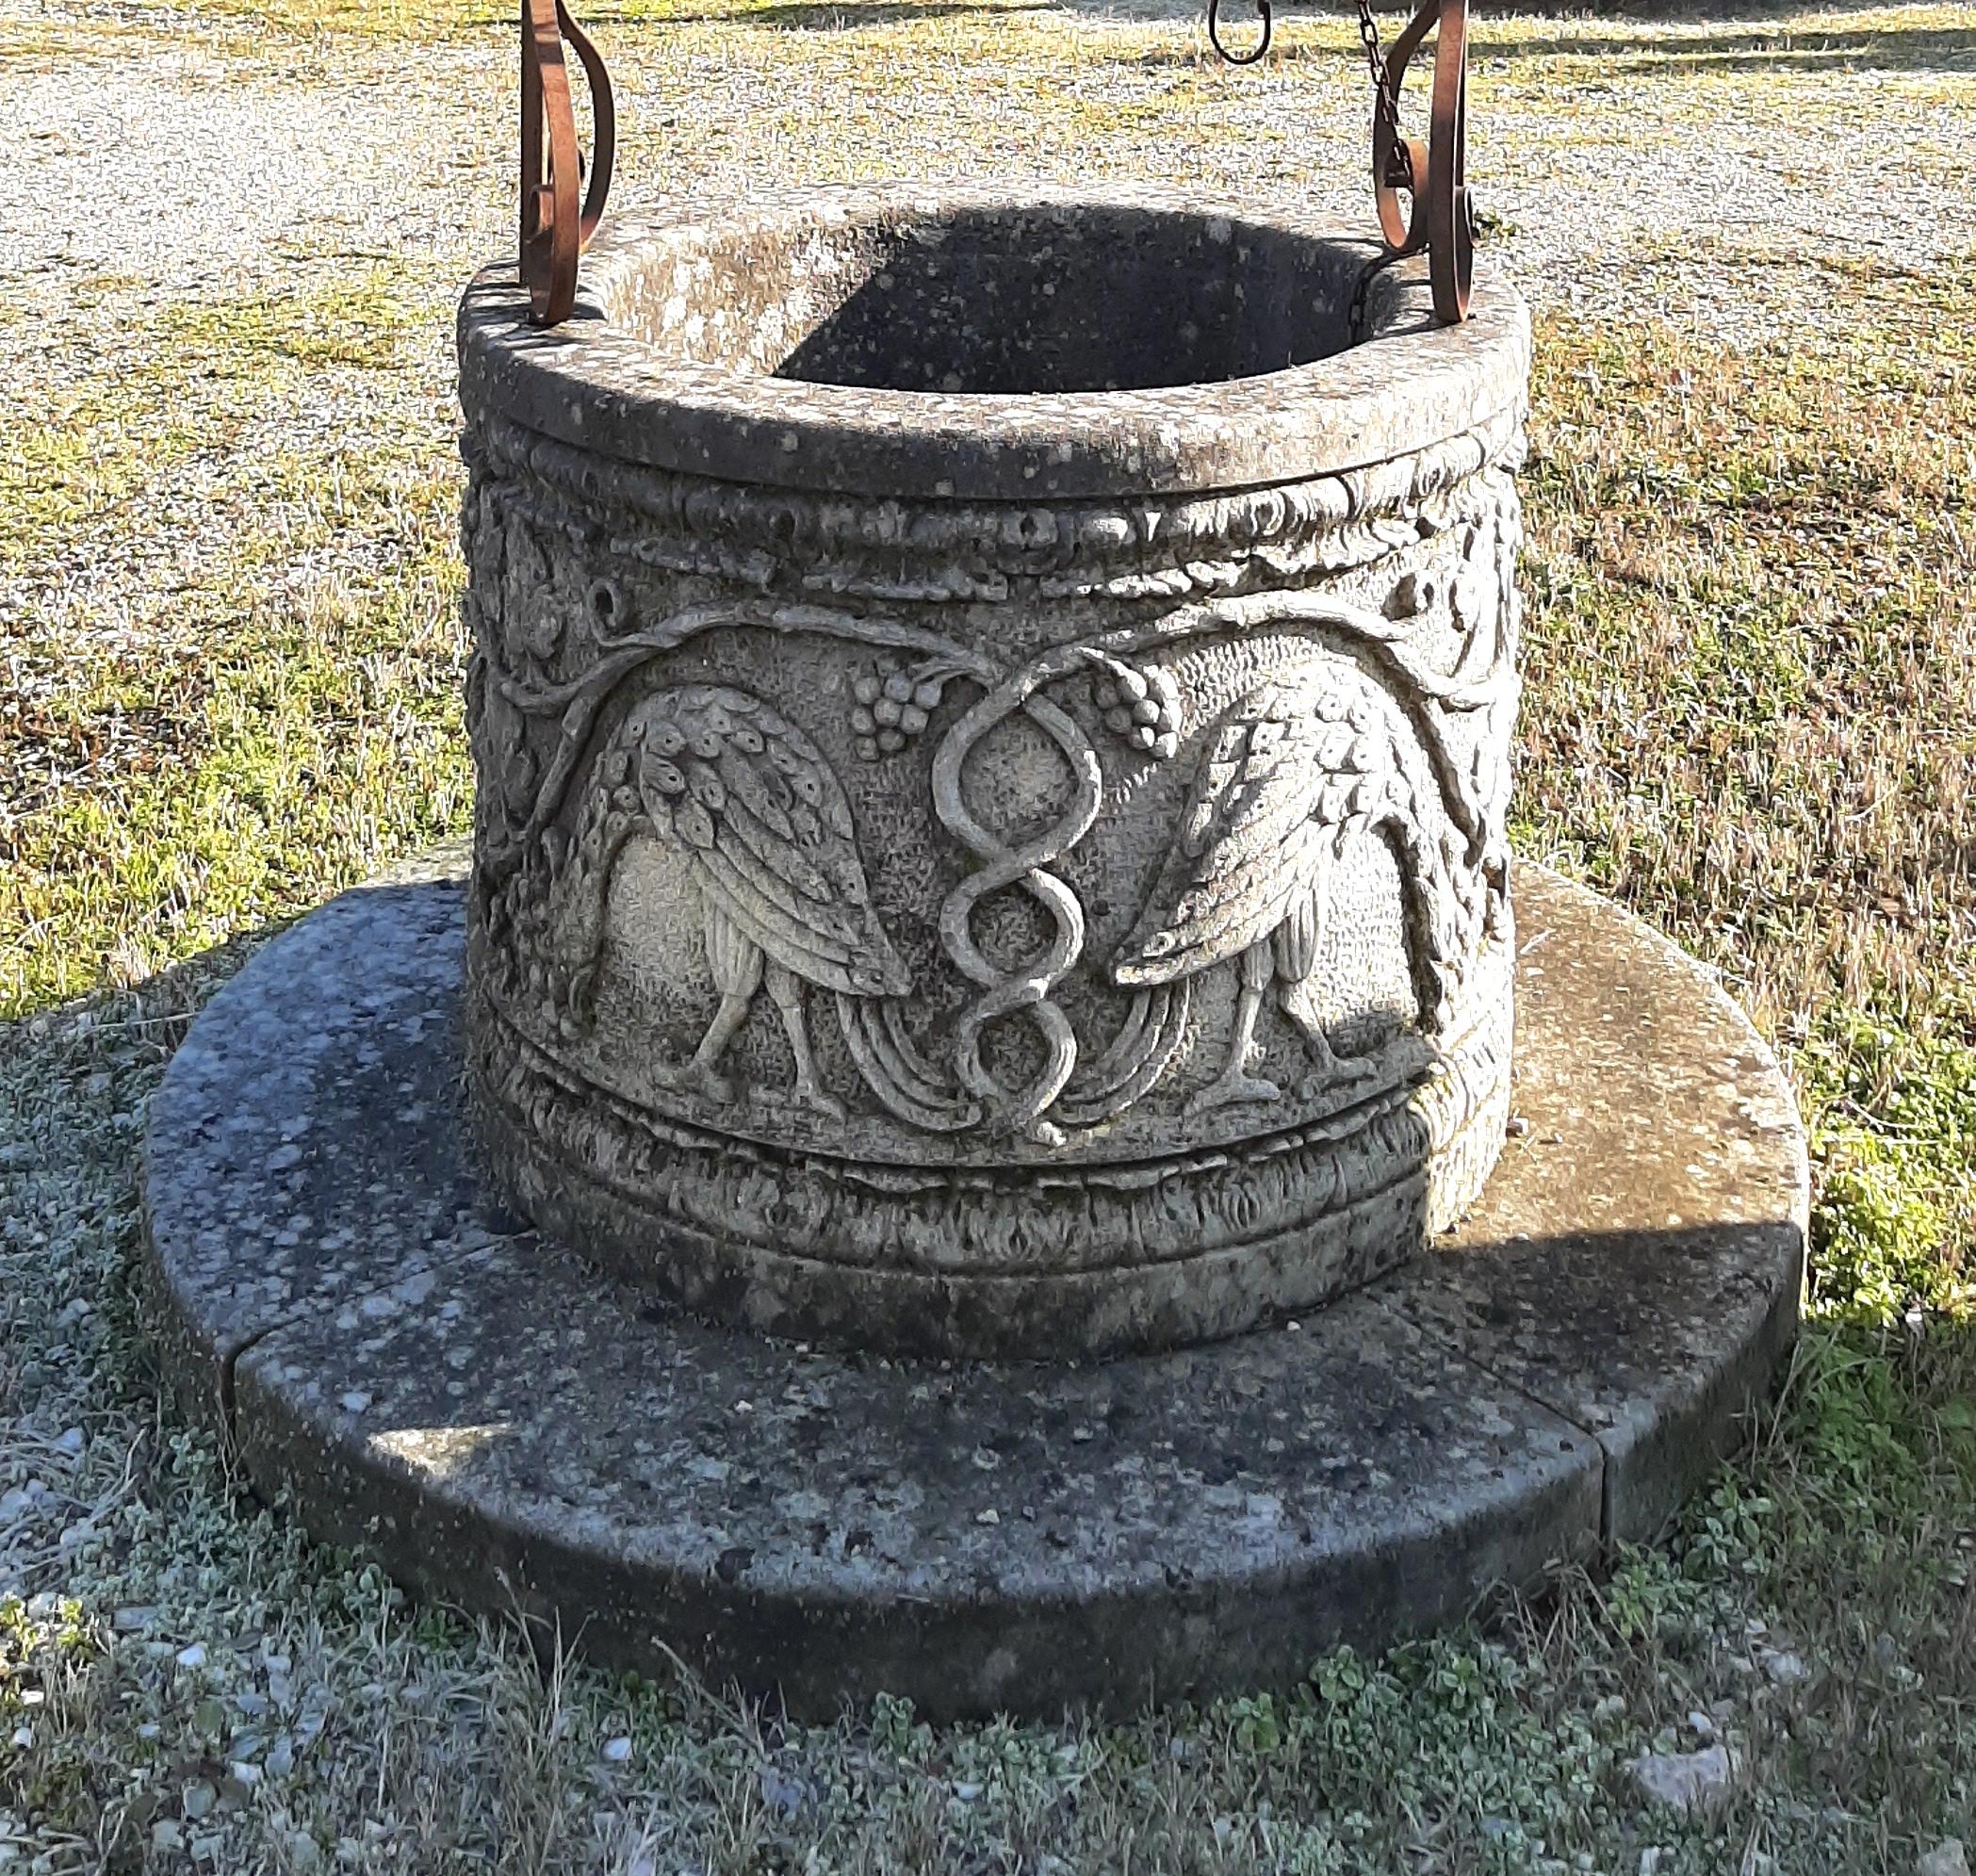 Une belle tête de puits à souhaits en pierre calcaire sculptée et en fer forgé de la région de la Vénétie.
Grande décoration pour votre jardin.
Elle peut également être utilisée comme jardinière. La base ronde a un diamètre de 140 cm. La hauteur